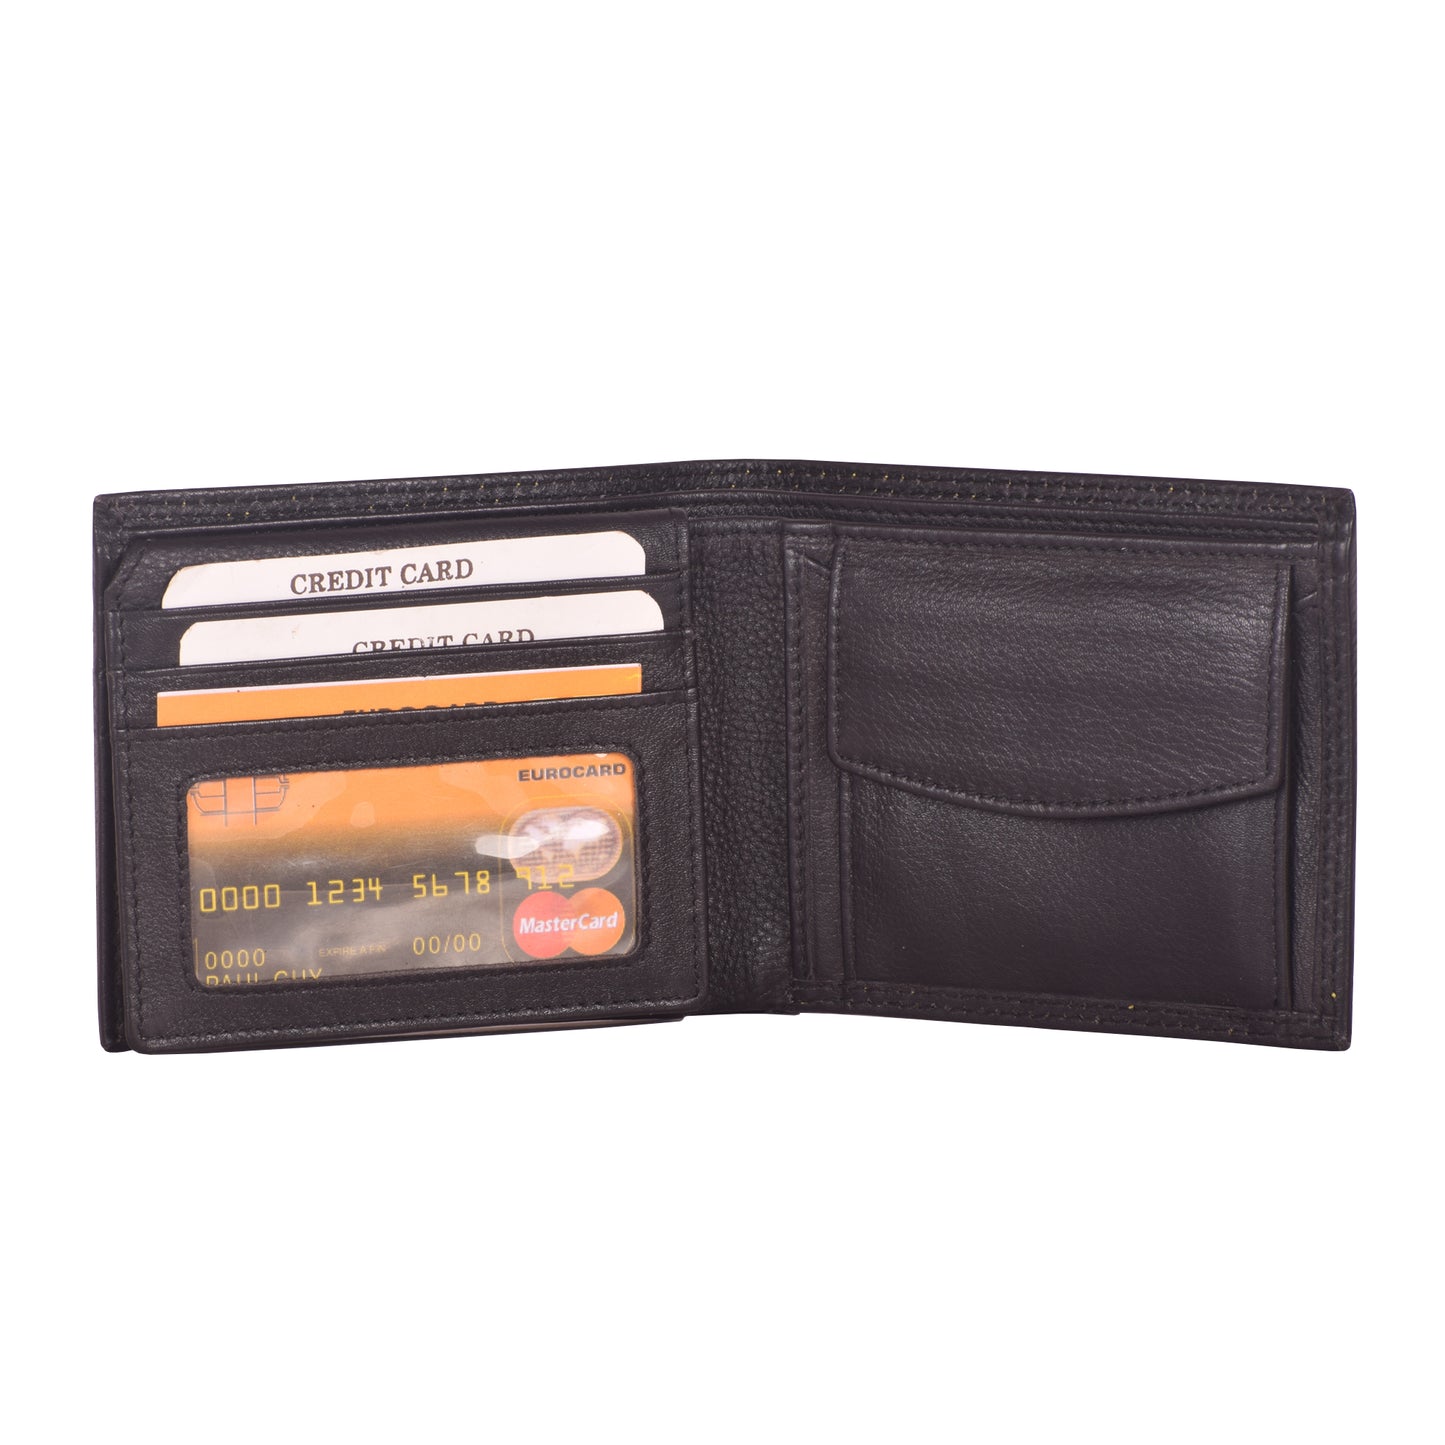 Genuine Leather Wallet for Men | RFID Wallet | Gift for Men